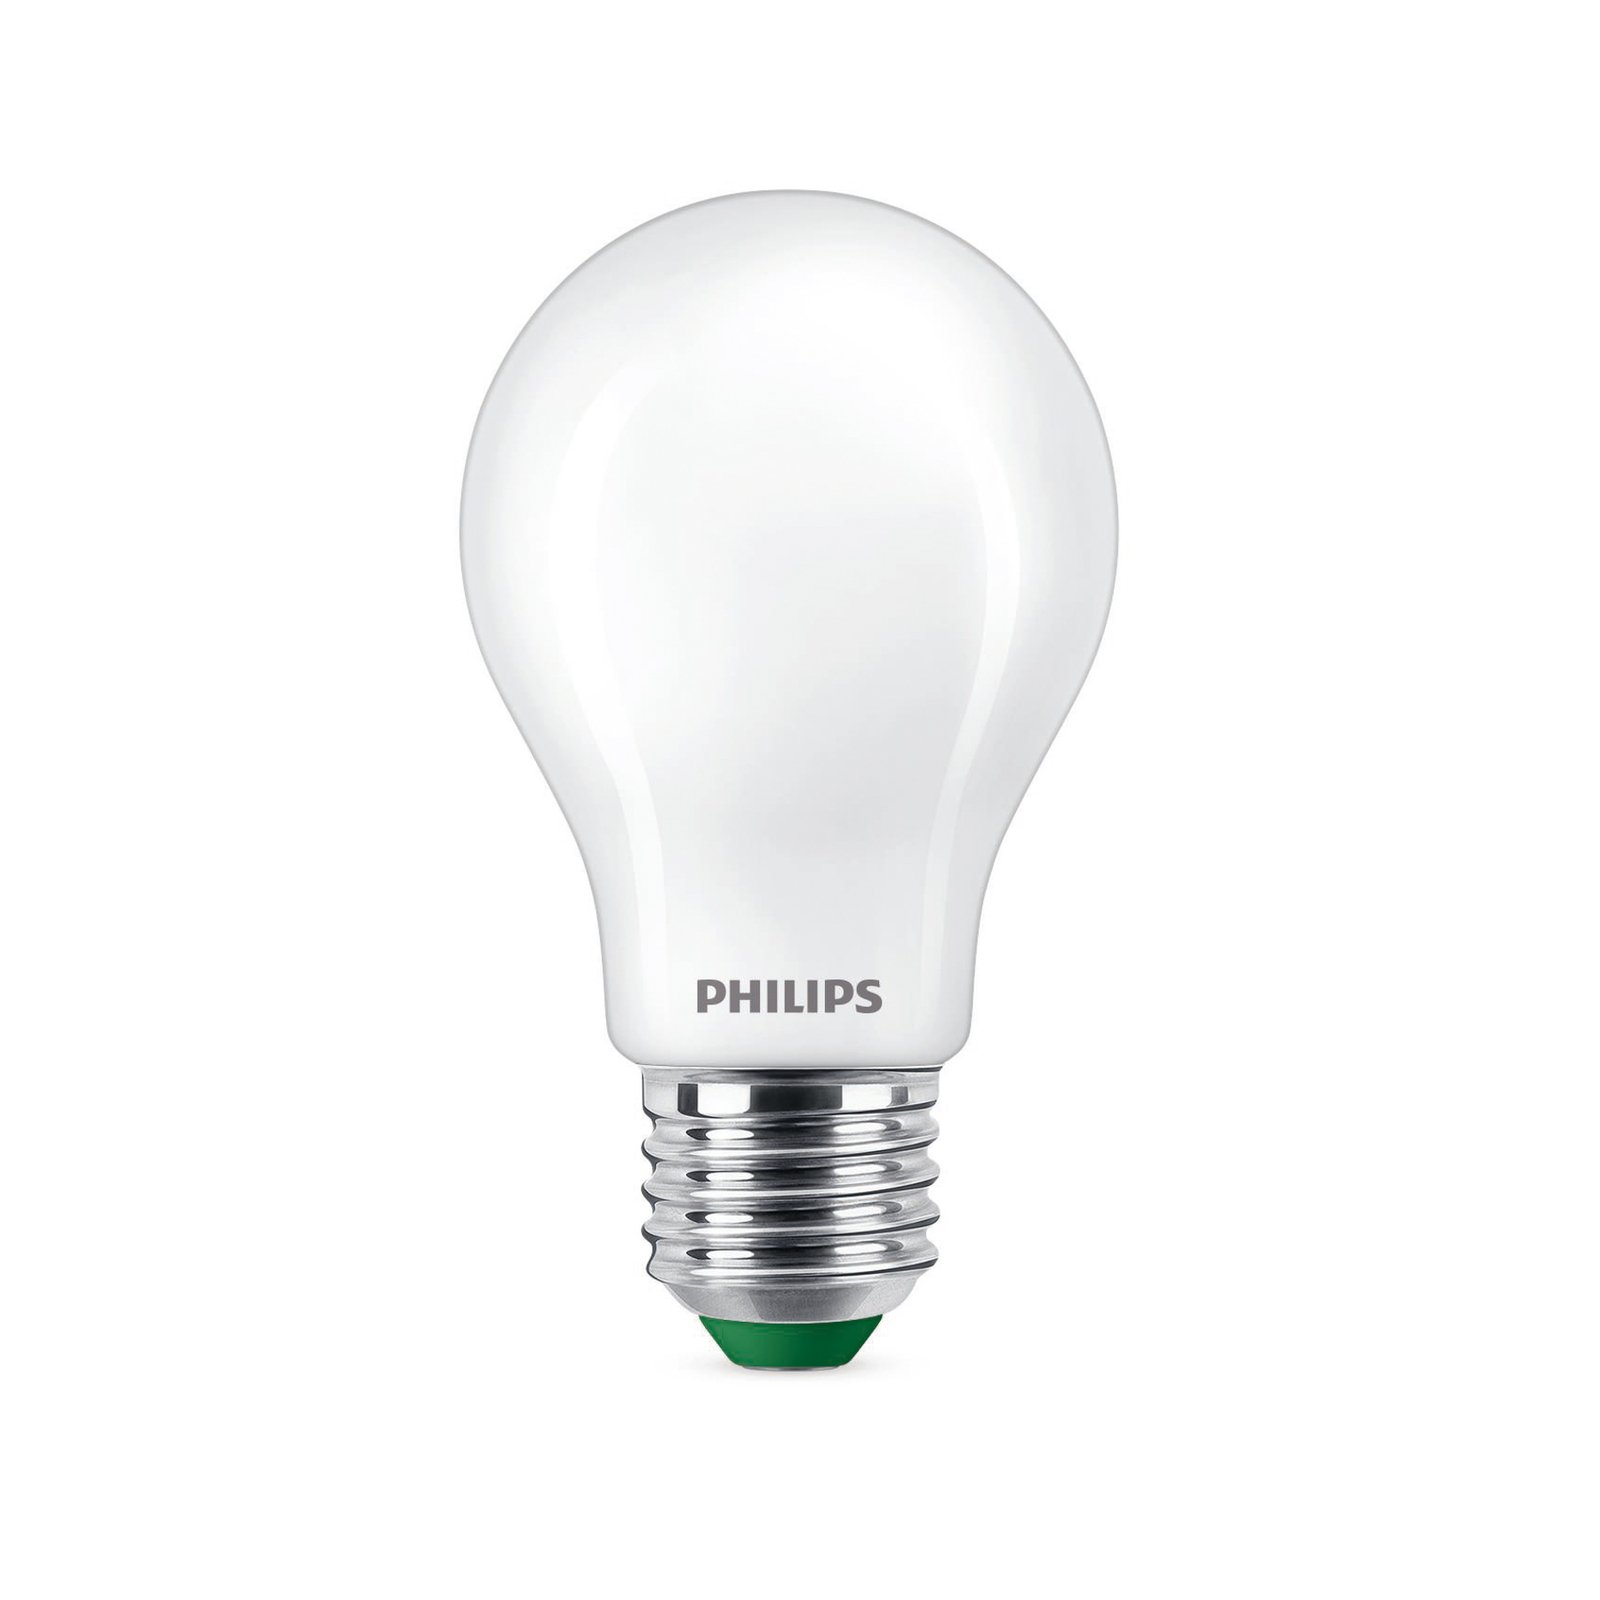 Philips E27 LED bulb A60 4W 840lm 4,000K matt